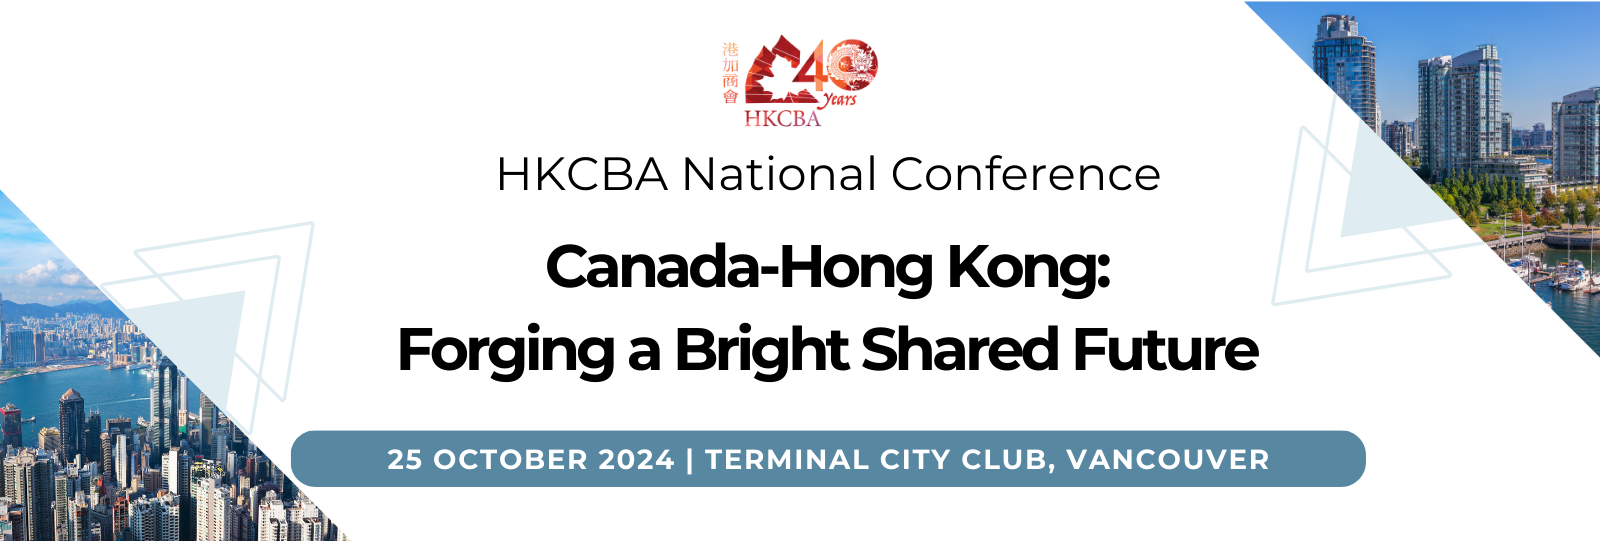 thumbnails HKCBA National Conference: Canada-Hong Kong: Forging a Bright Shared Future